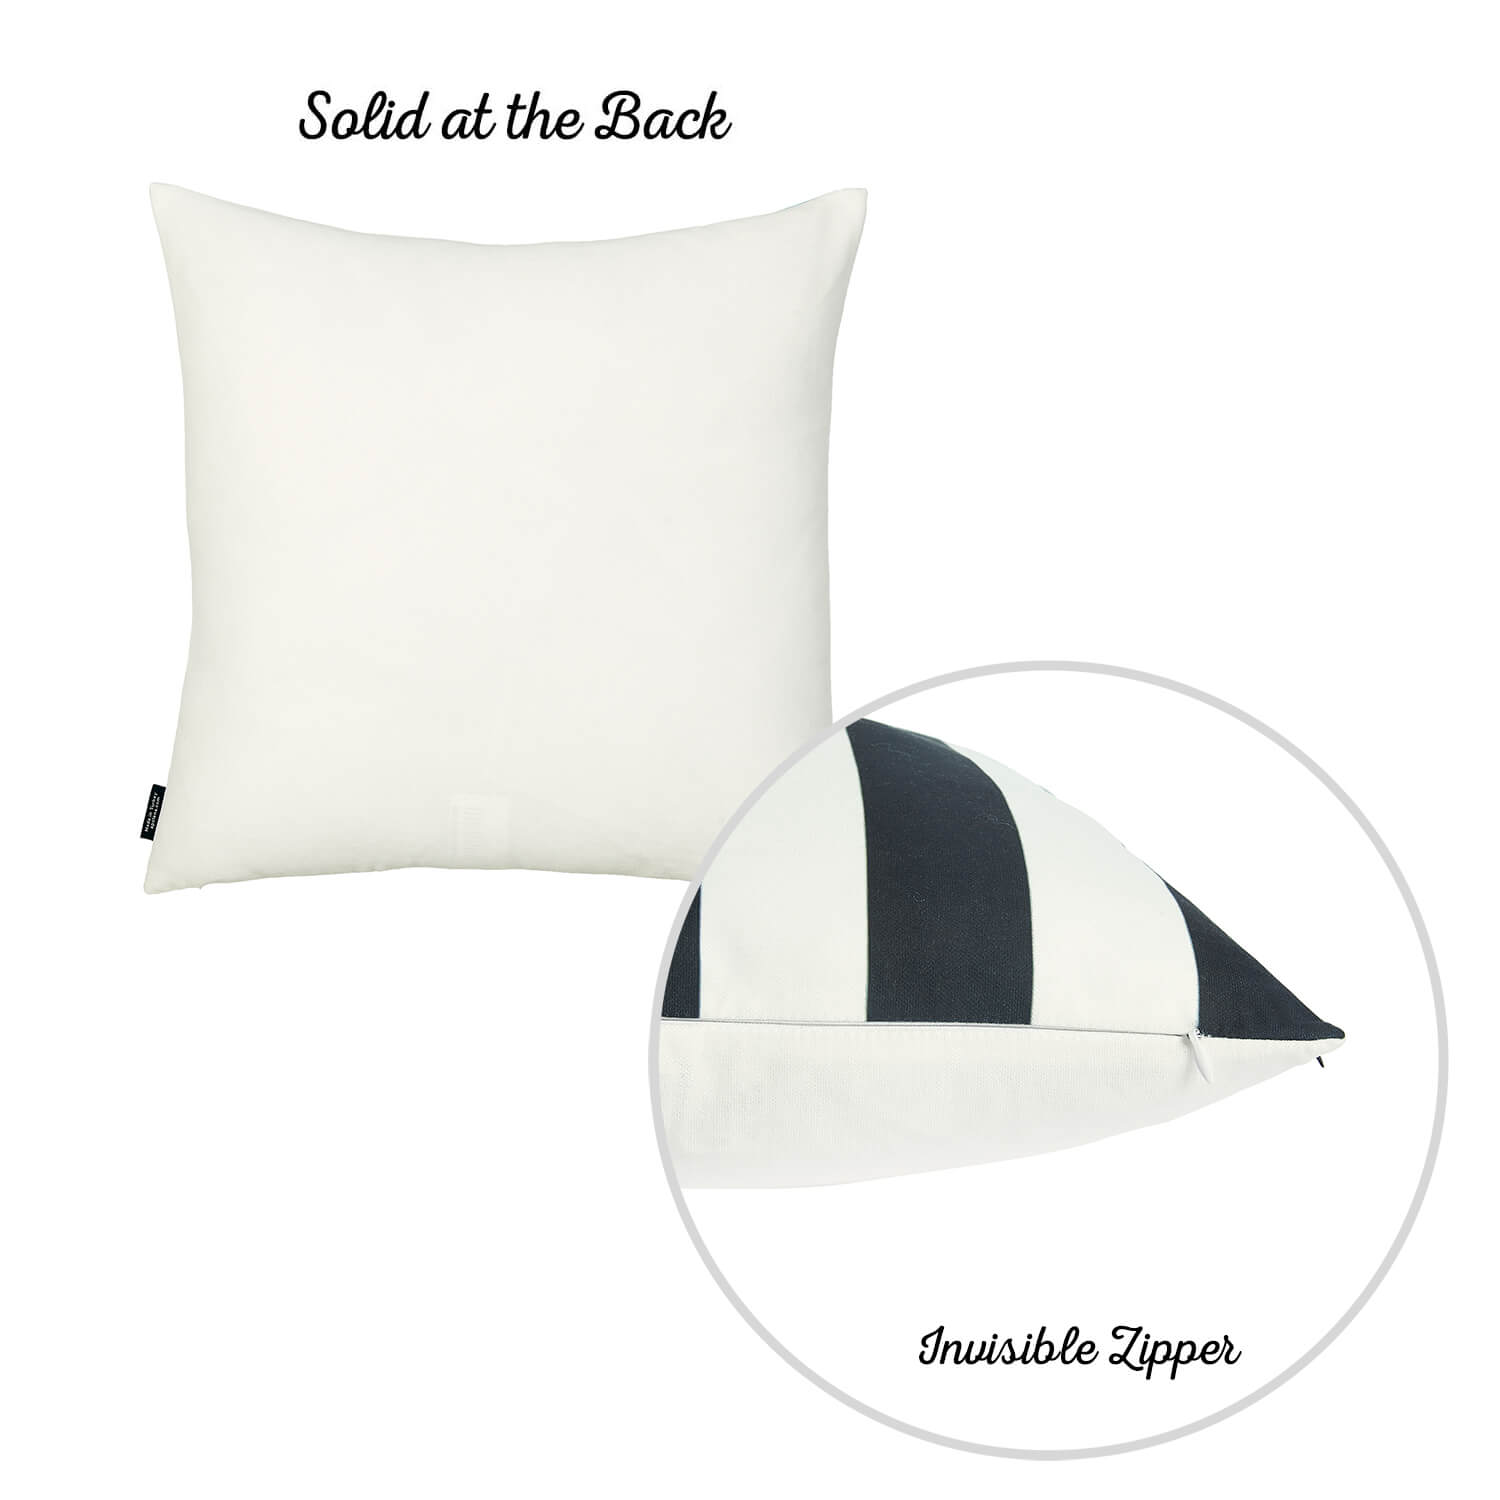 Geometric Black Stripes Square 18" Throw Pillow Cover - Apolena